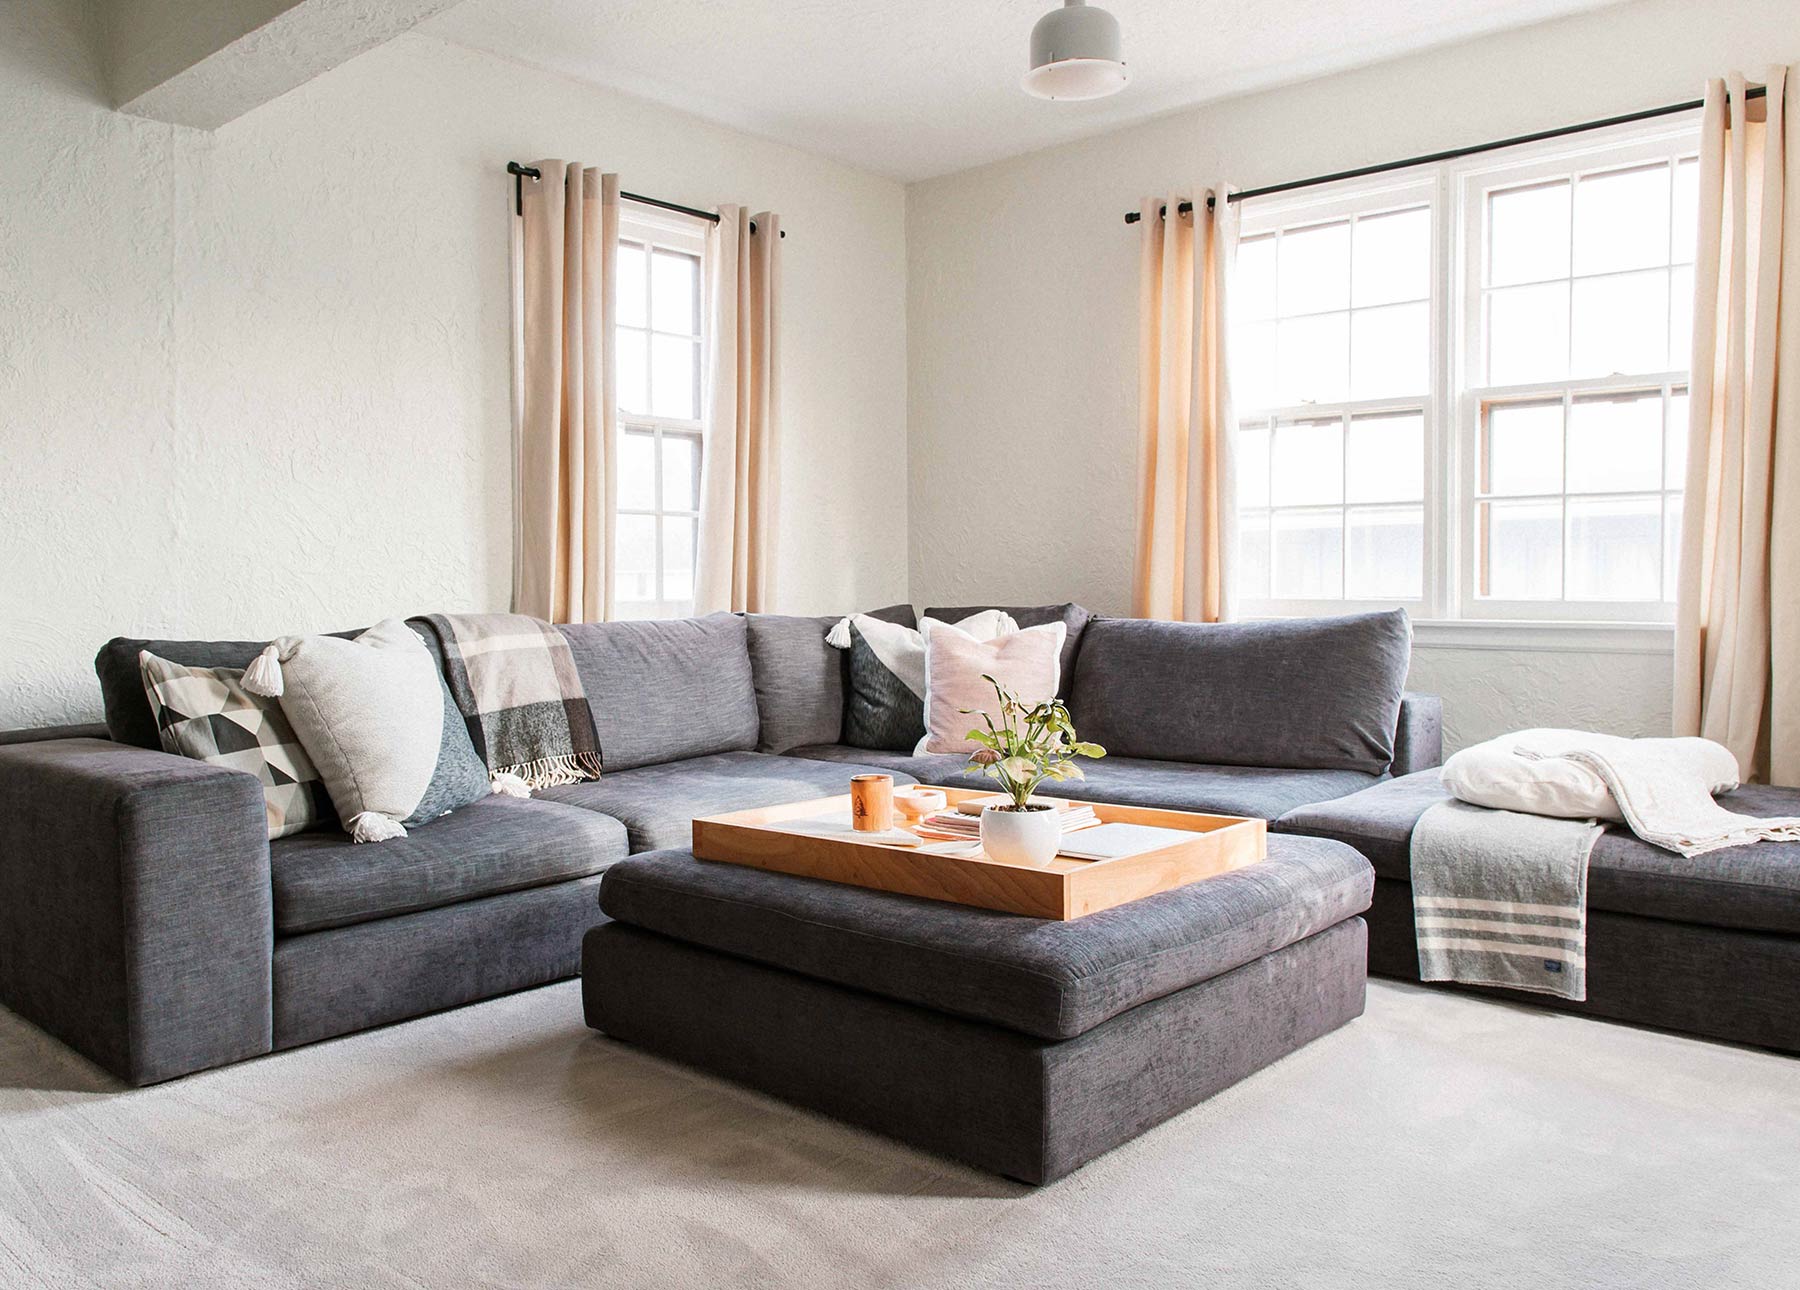 Living Room Fruniture Sets For Sale